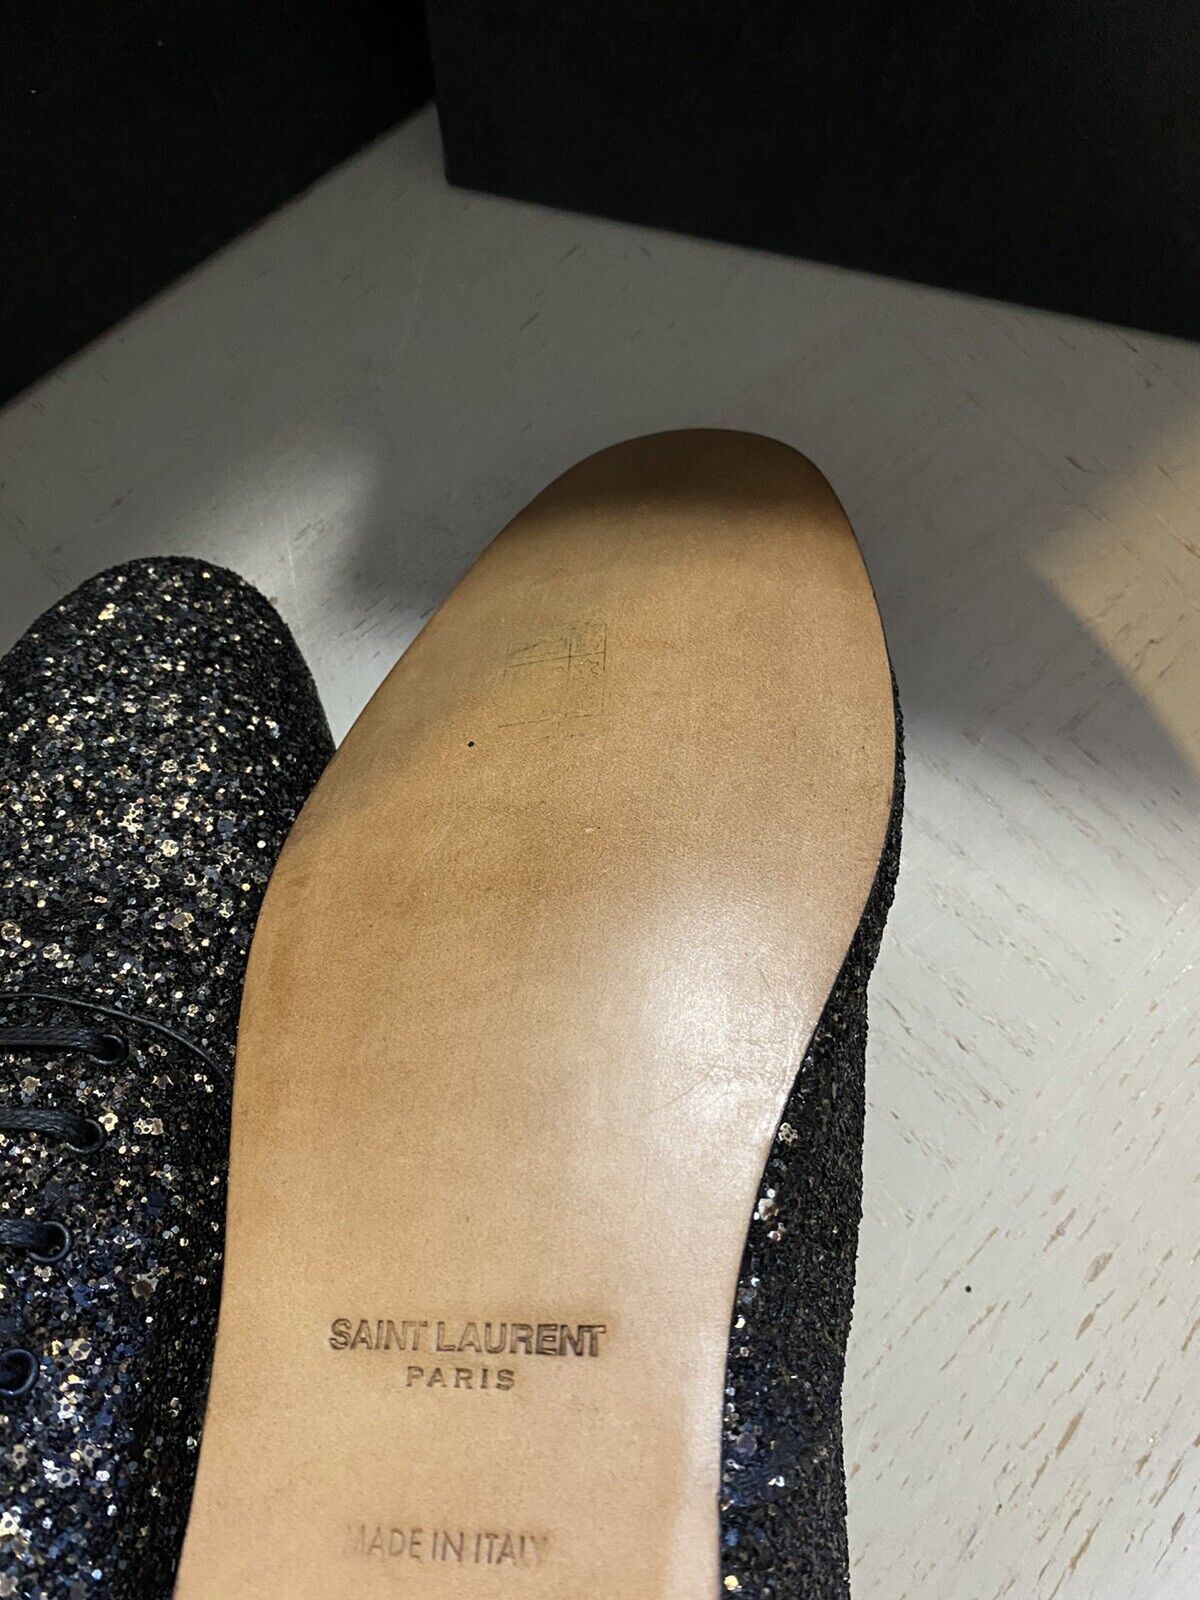 NIB $1095 Saint Laurent Мужские кожаные туфли с блестками Midnight черного/золотого цвета 10,5 США/